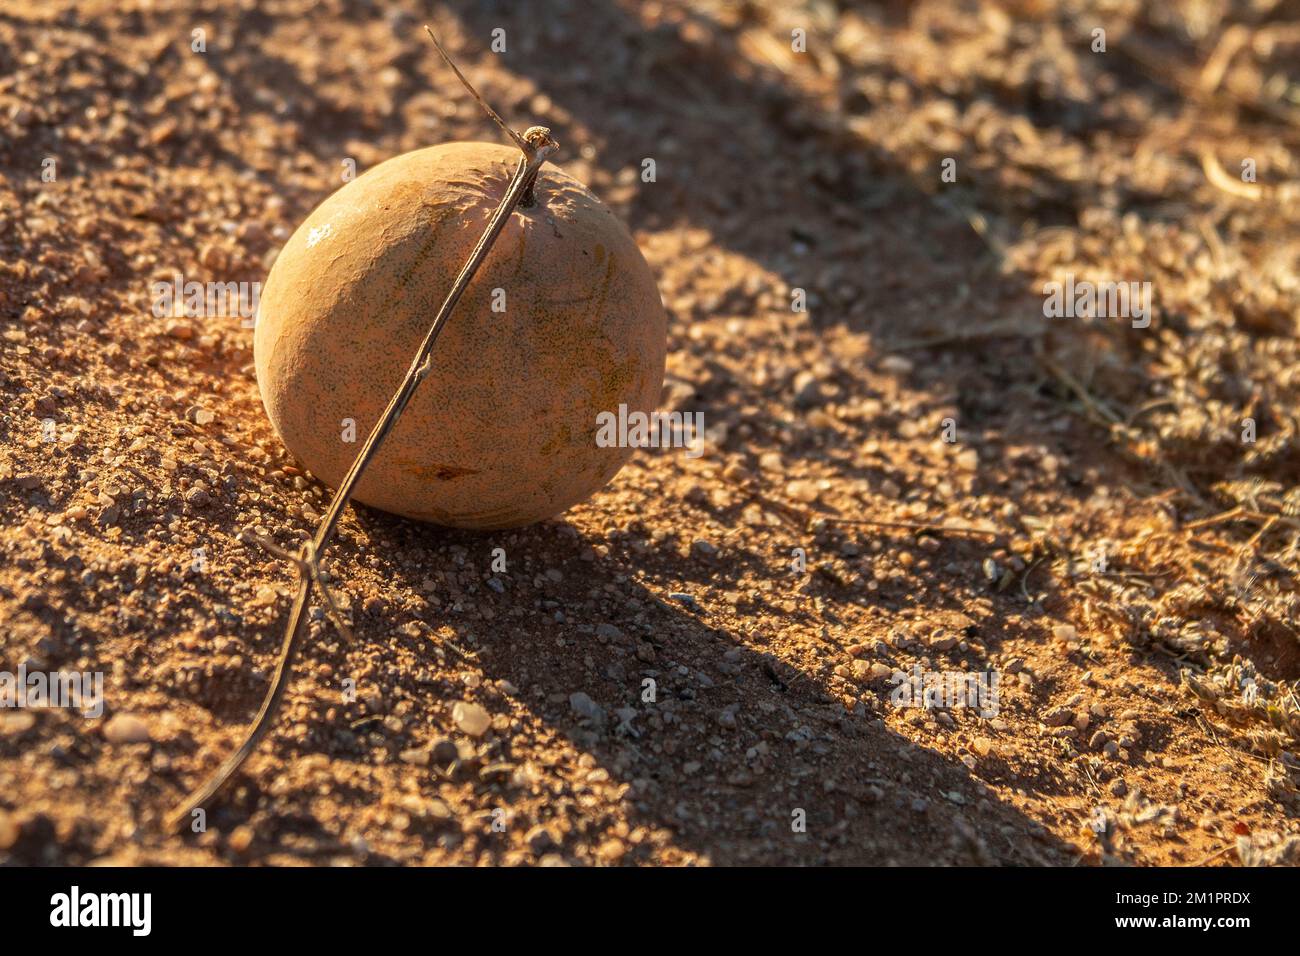 Desert Squash or Bitter Gourd growing in the Namib Desert. Stock Photo